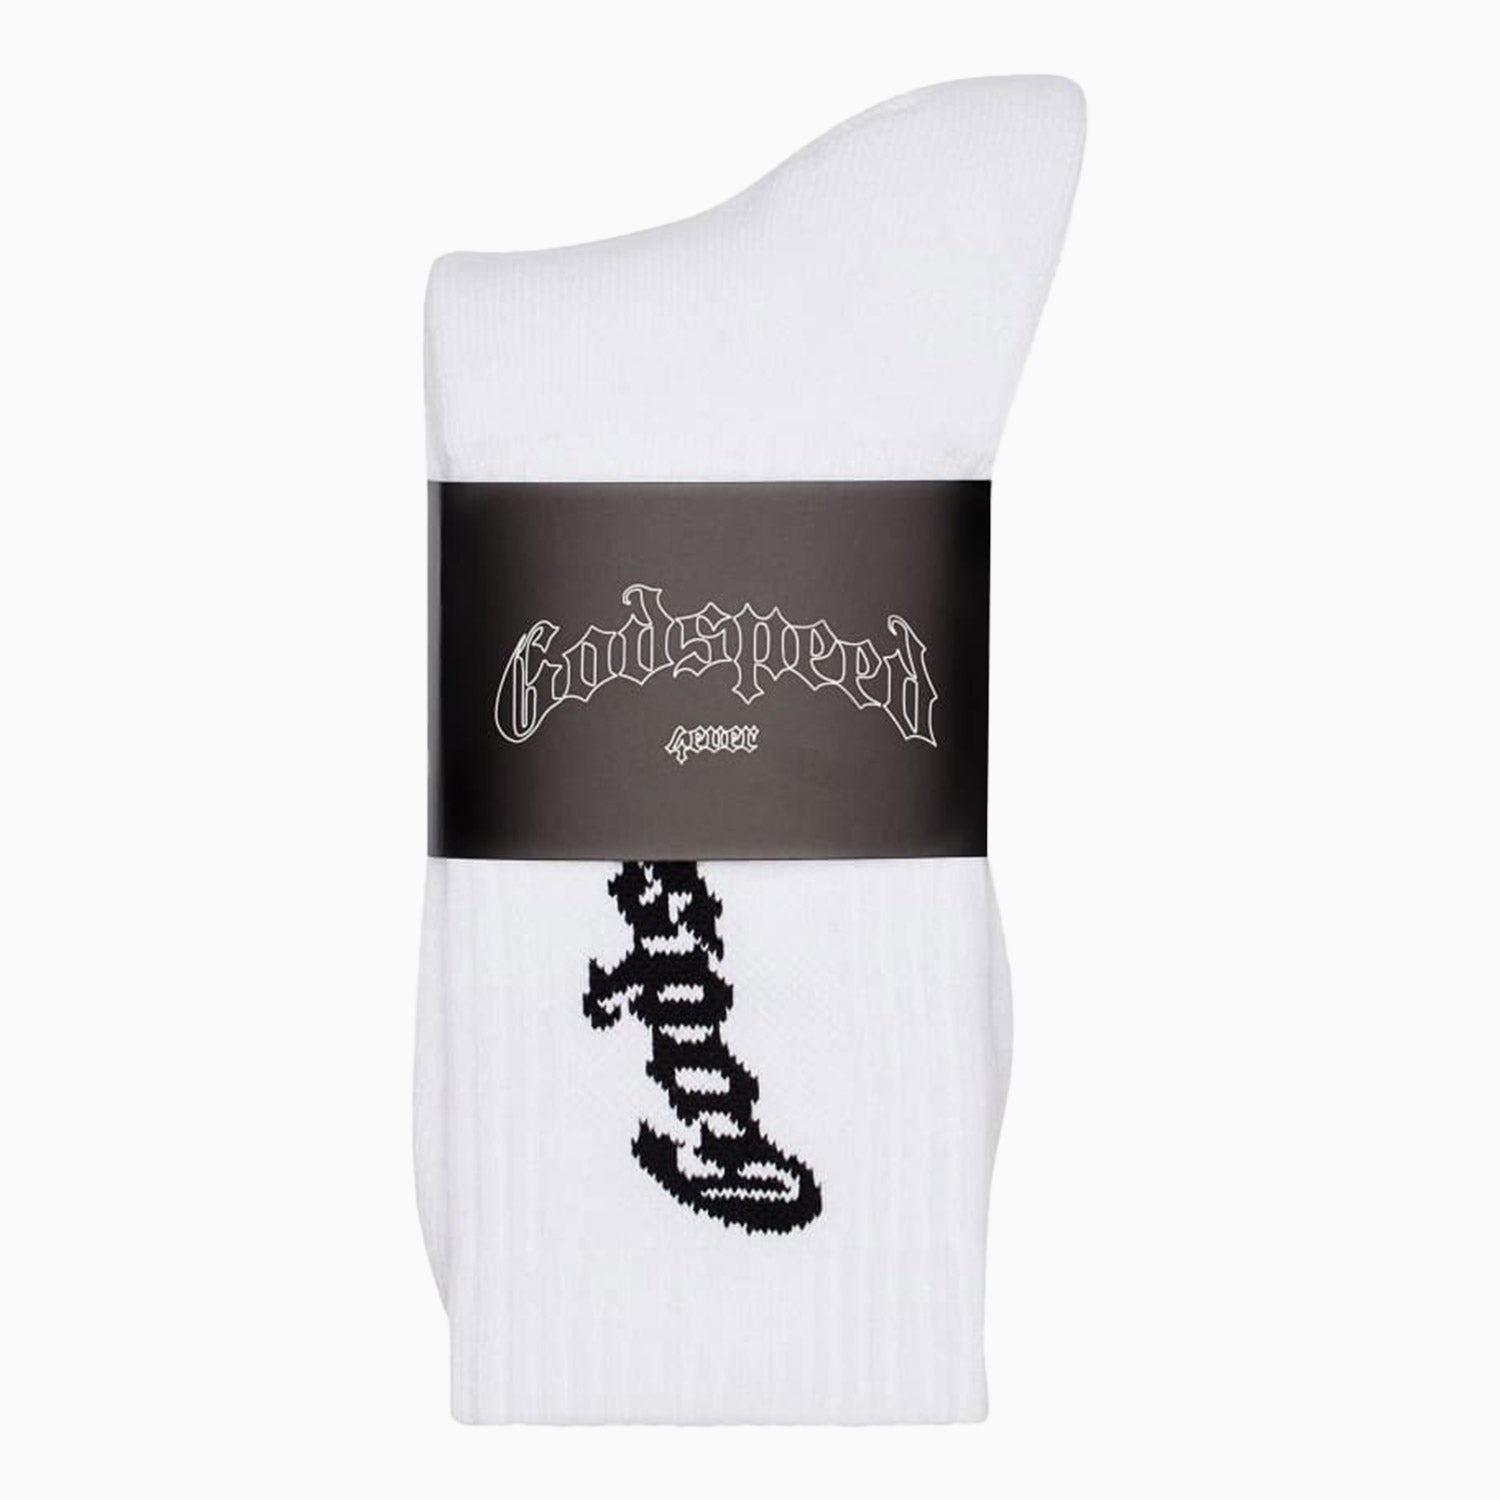 mens-godspeed-og-logo-socks-oglogosocks-white